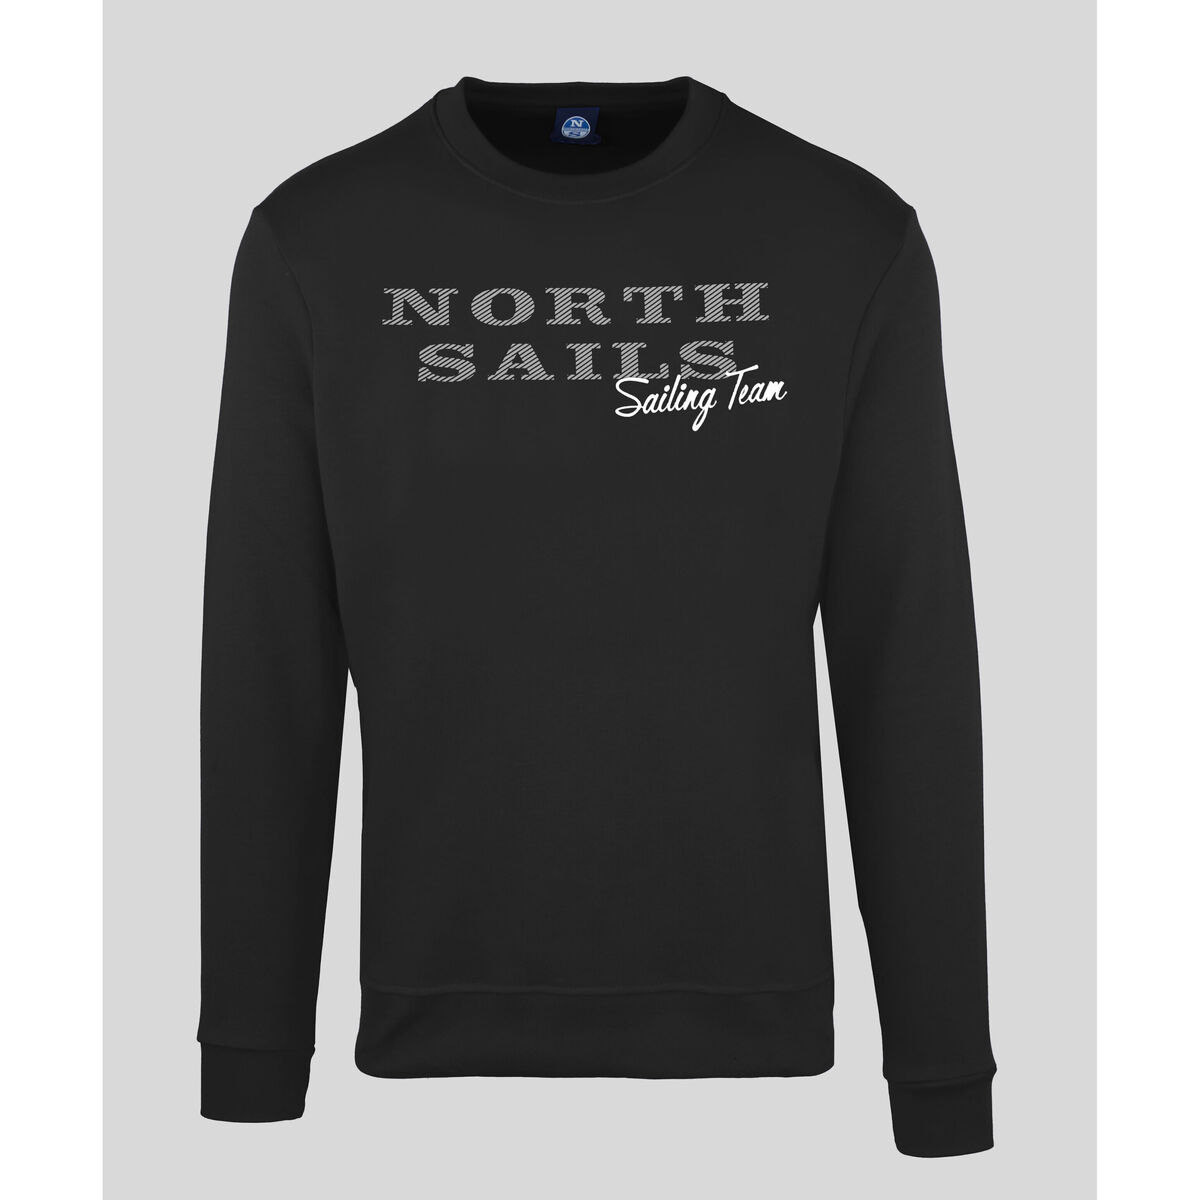 textil Hombre Sudaderas North Sails - 9022970 Negro